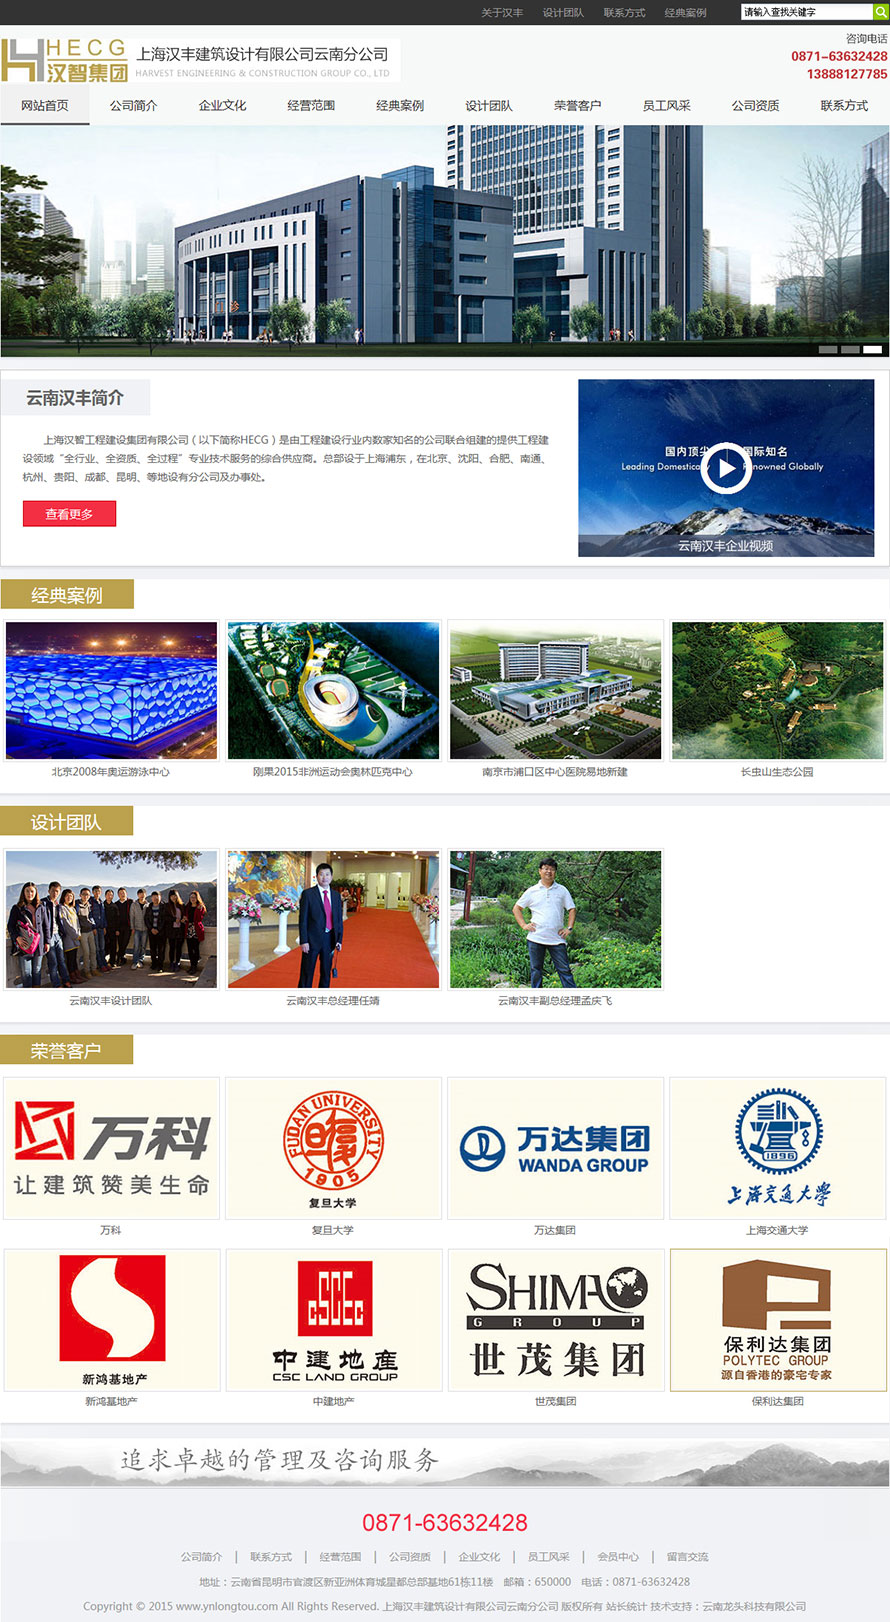 云南龙头科技有限公司网站案例――上海汉丰建筑设计有限公司云南分公司